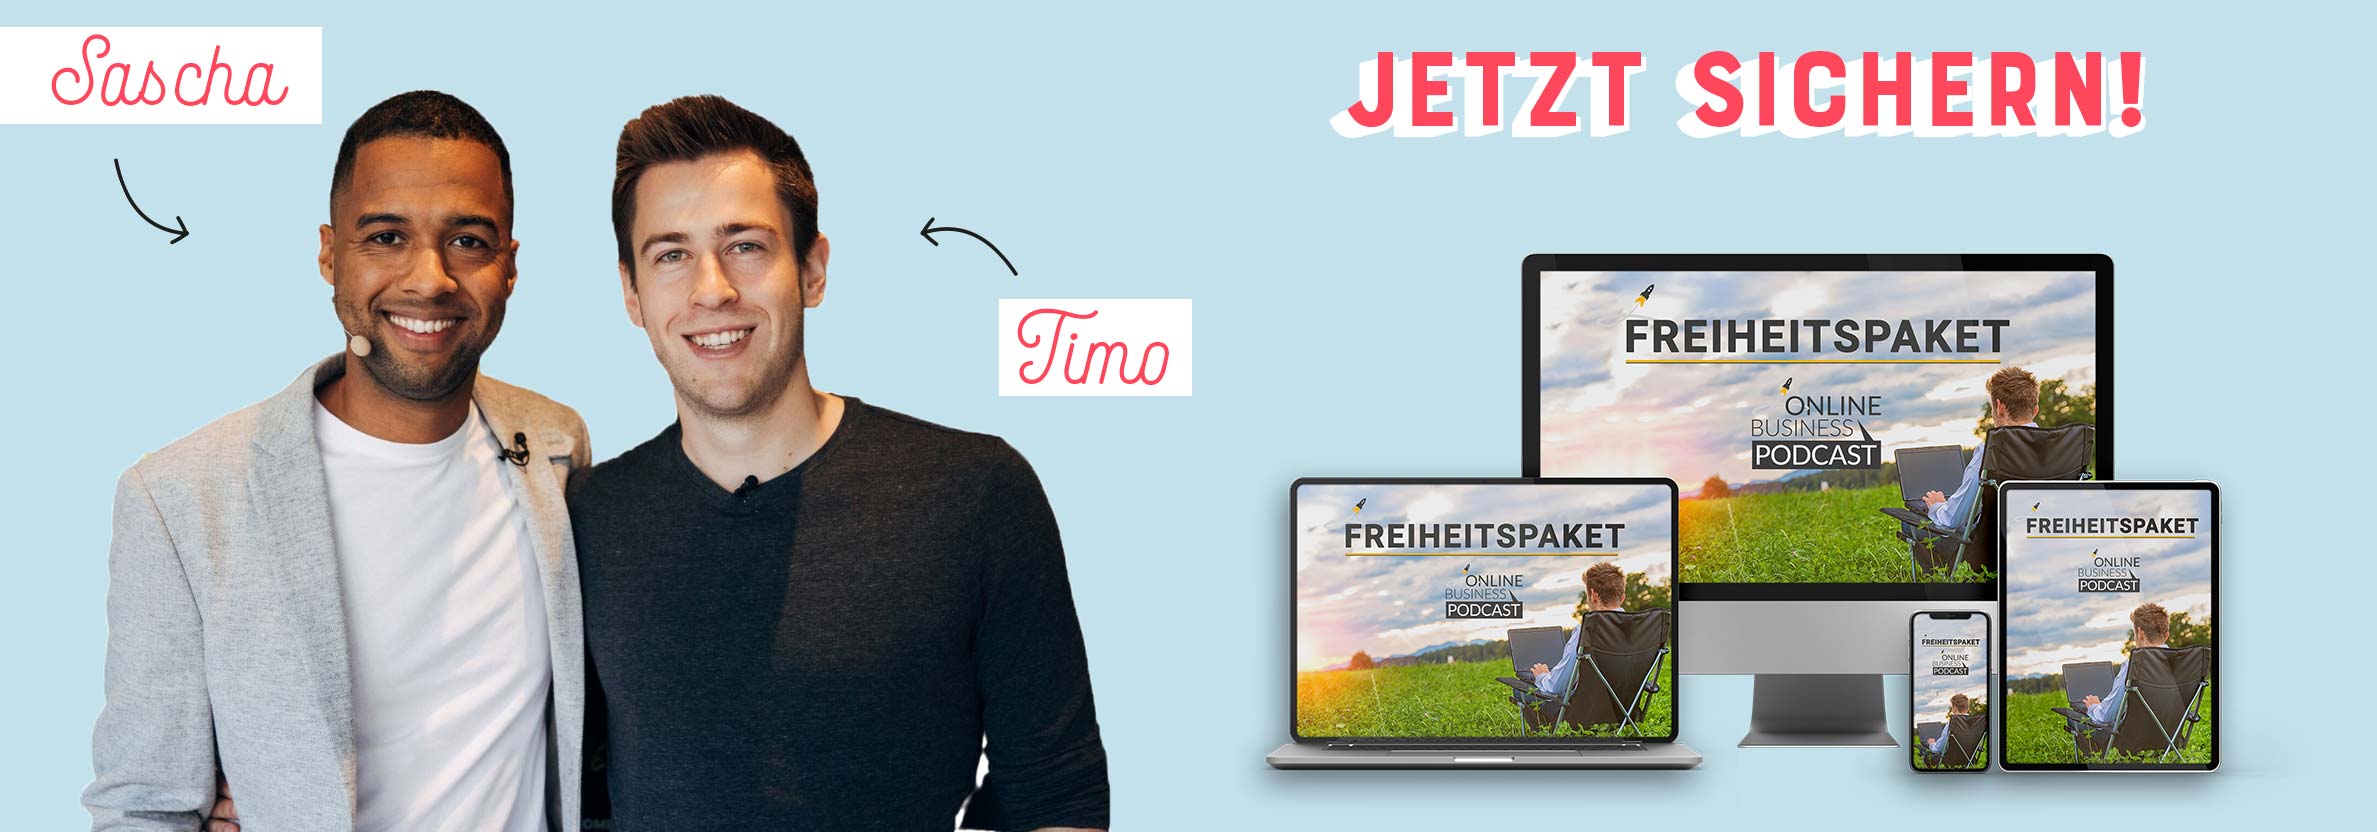 Freiheitspaket 2020 - Online Business Podcast Timo und Sascha - Interview by Johanna Fritz